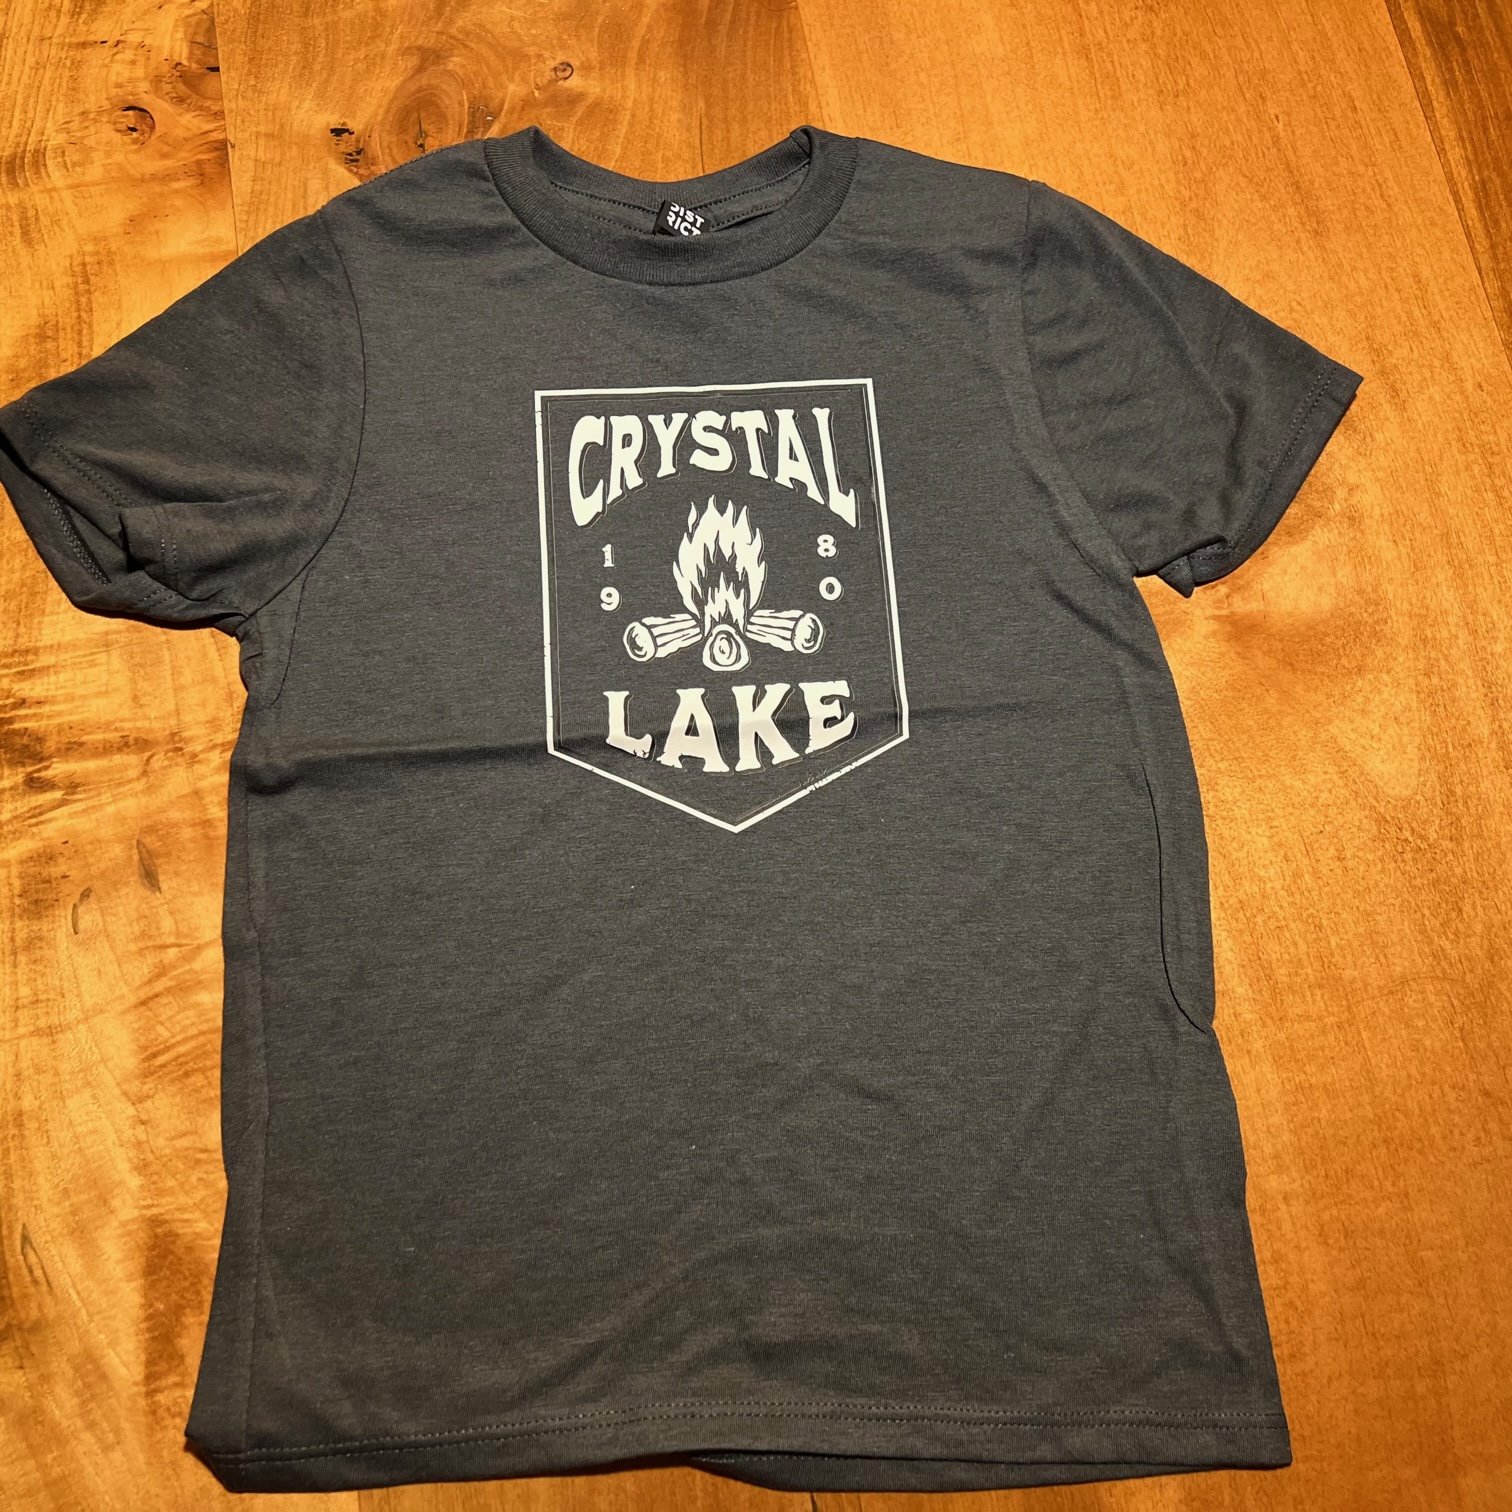 Camp Crystal Lake 1980 Campfire Youth Charcoal Grey T-shirt